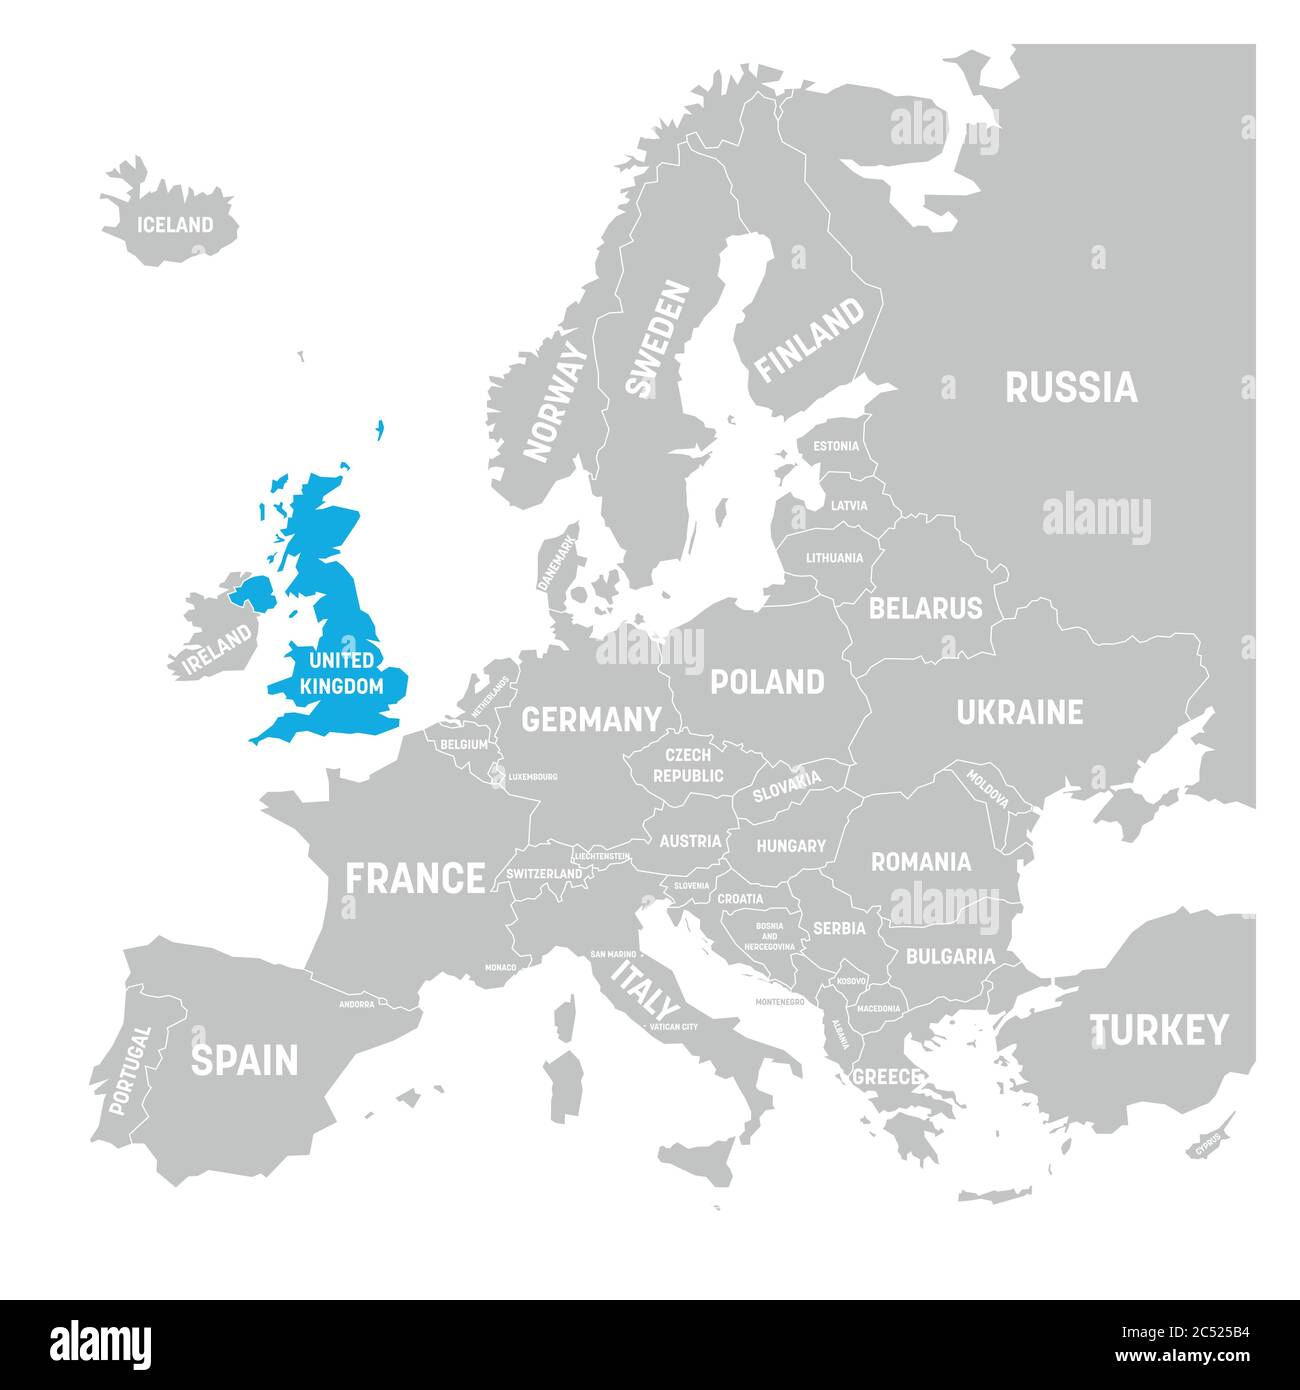 Regno Unito, Regno Unito di Gran Bretagna e Irlanda del Nord, contrassegnato da una mappa politica blu in grigio dell'Europa. Illustrazione vettoriale. Illustrazione Vettoriale